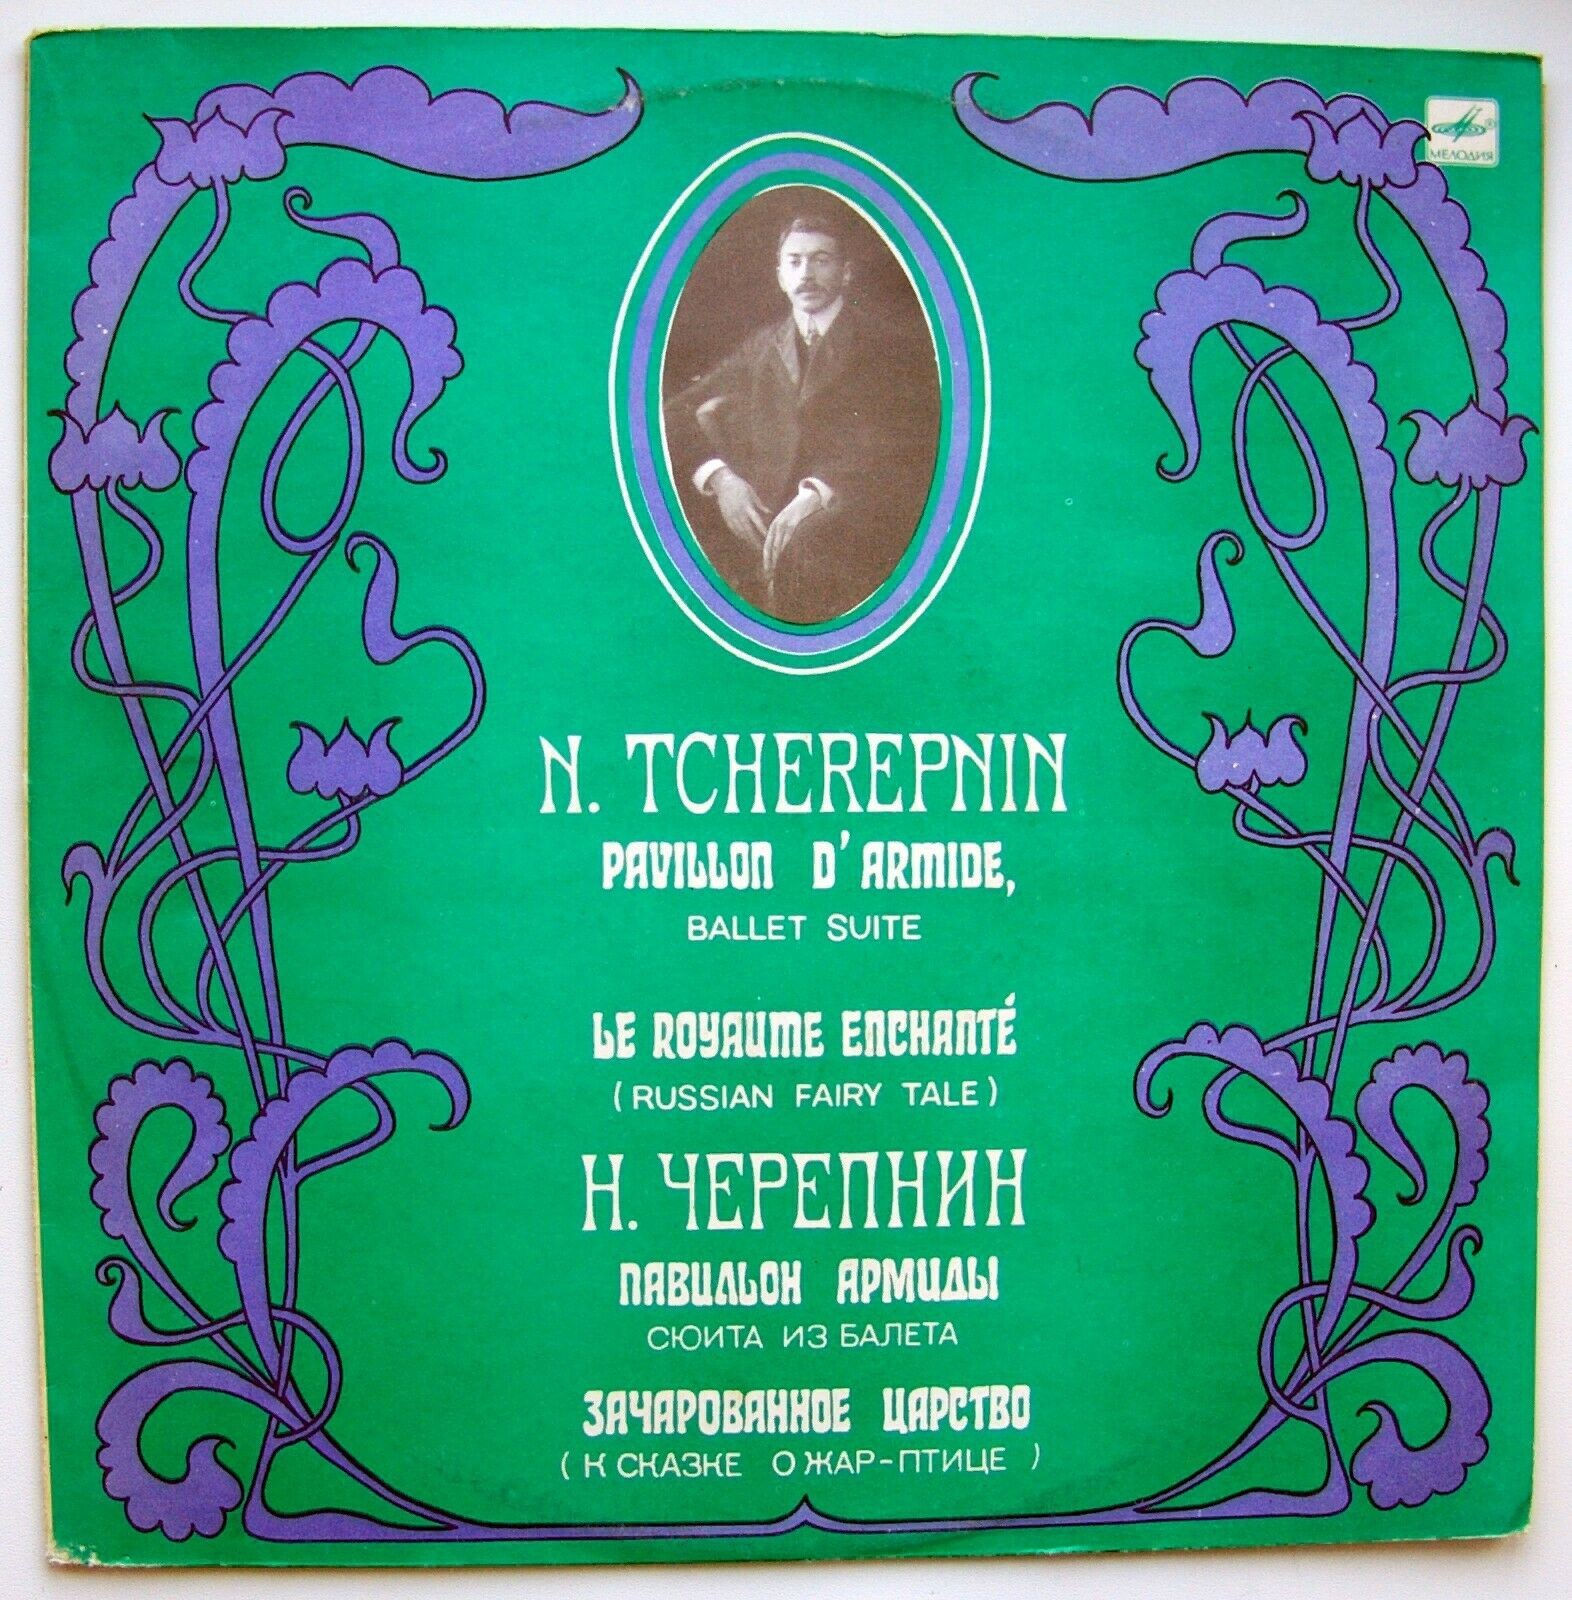 Н. ЧЕРЕПНИН (1873-1945)